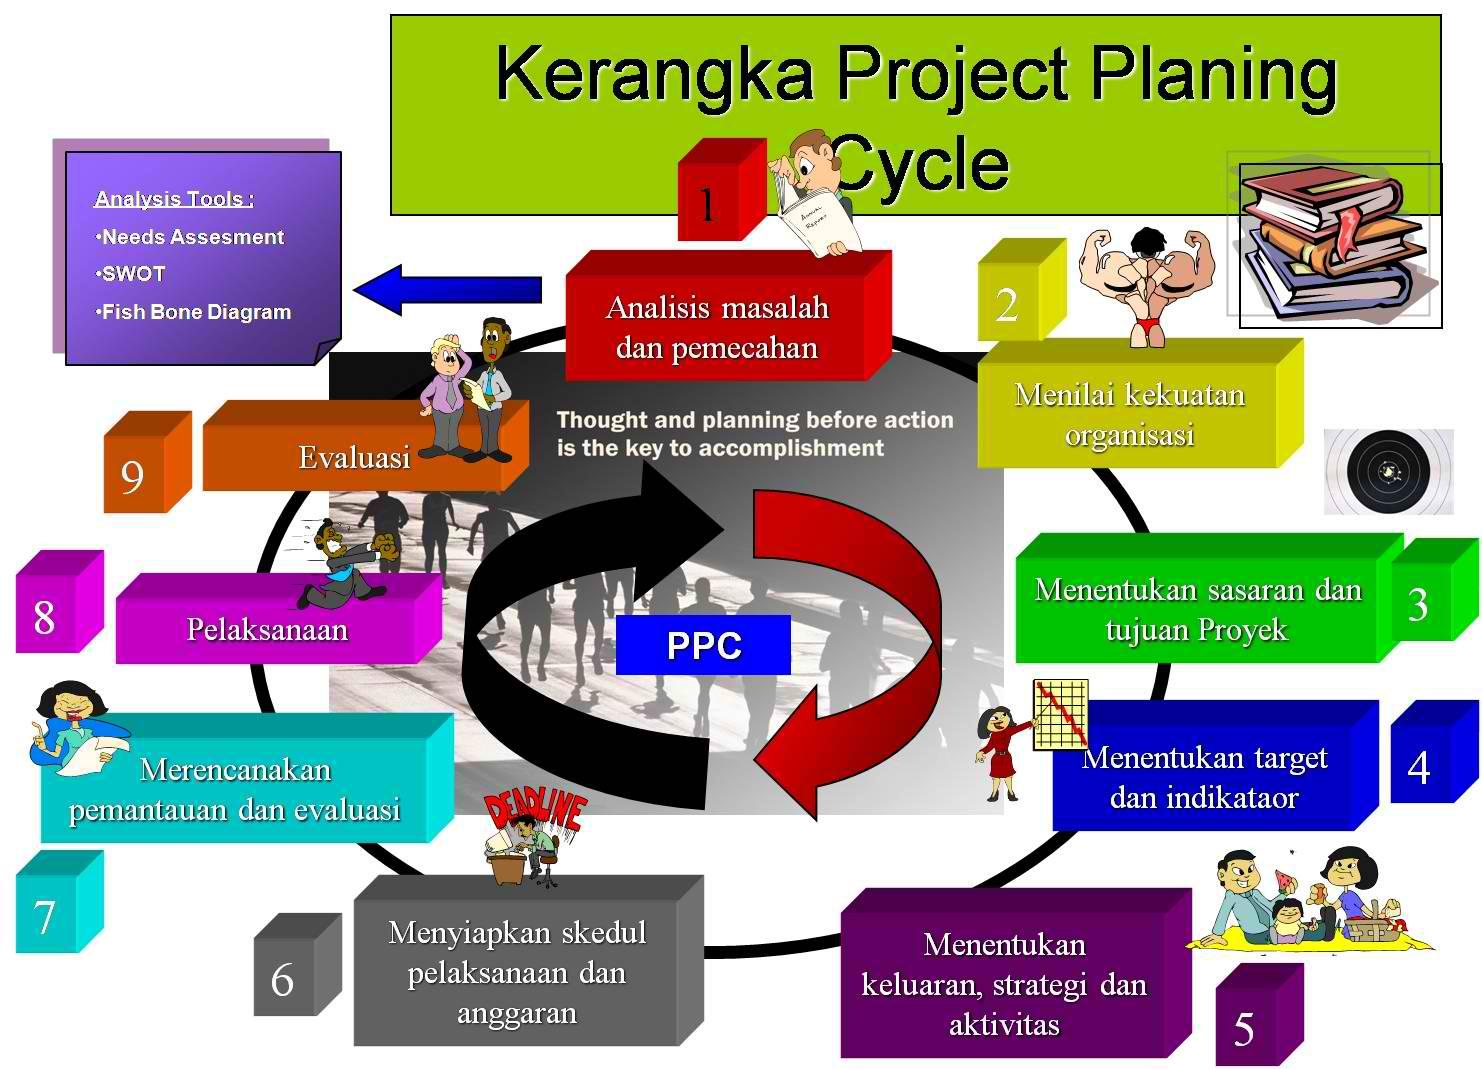 Kerangka Project